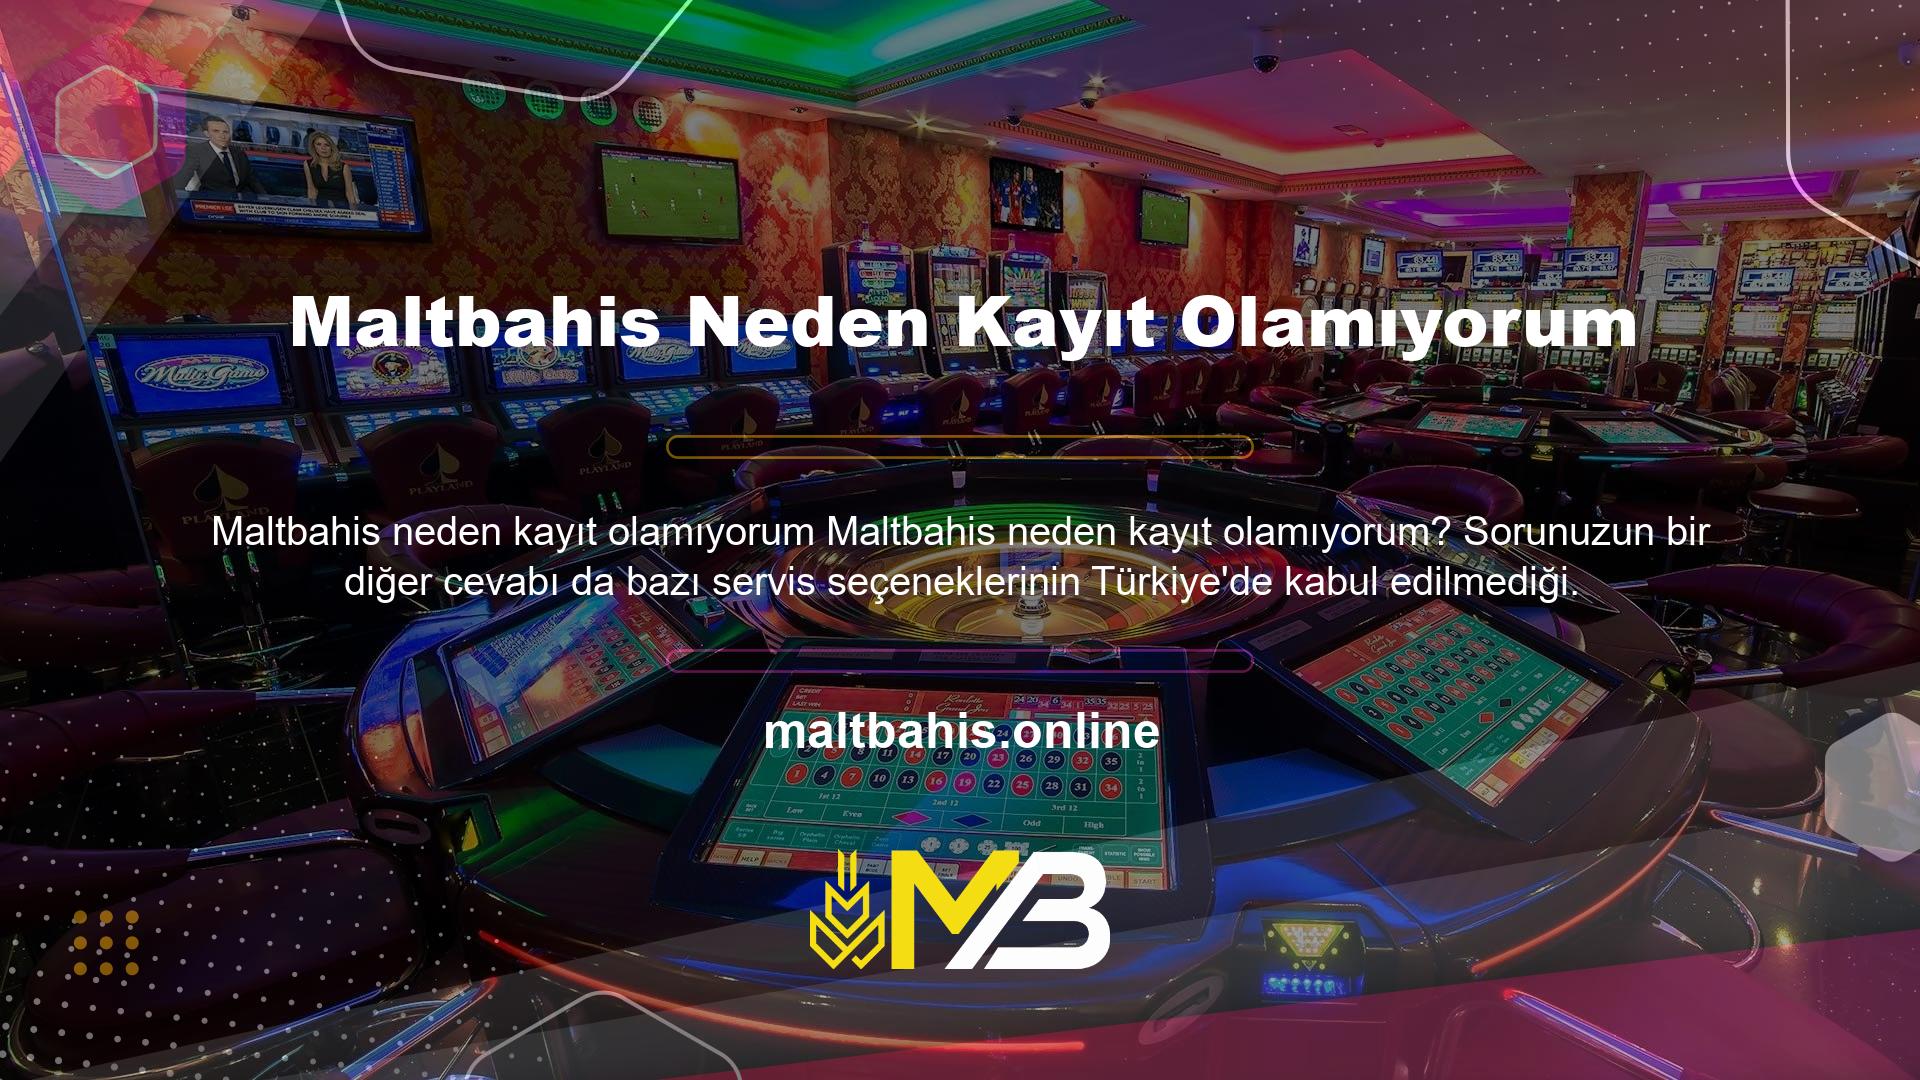 Maltbahis oyunları bitti mi? Evet, Maltbahis sitesinde gösterilen oyunların hiçbiri Türkiye'de yasak